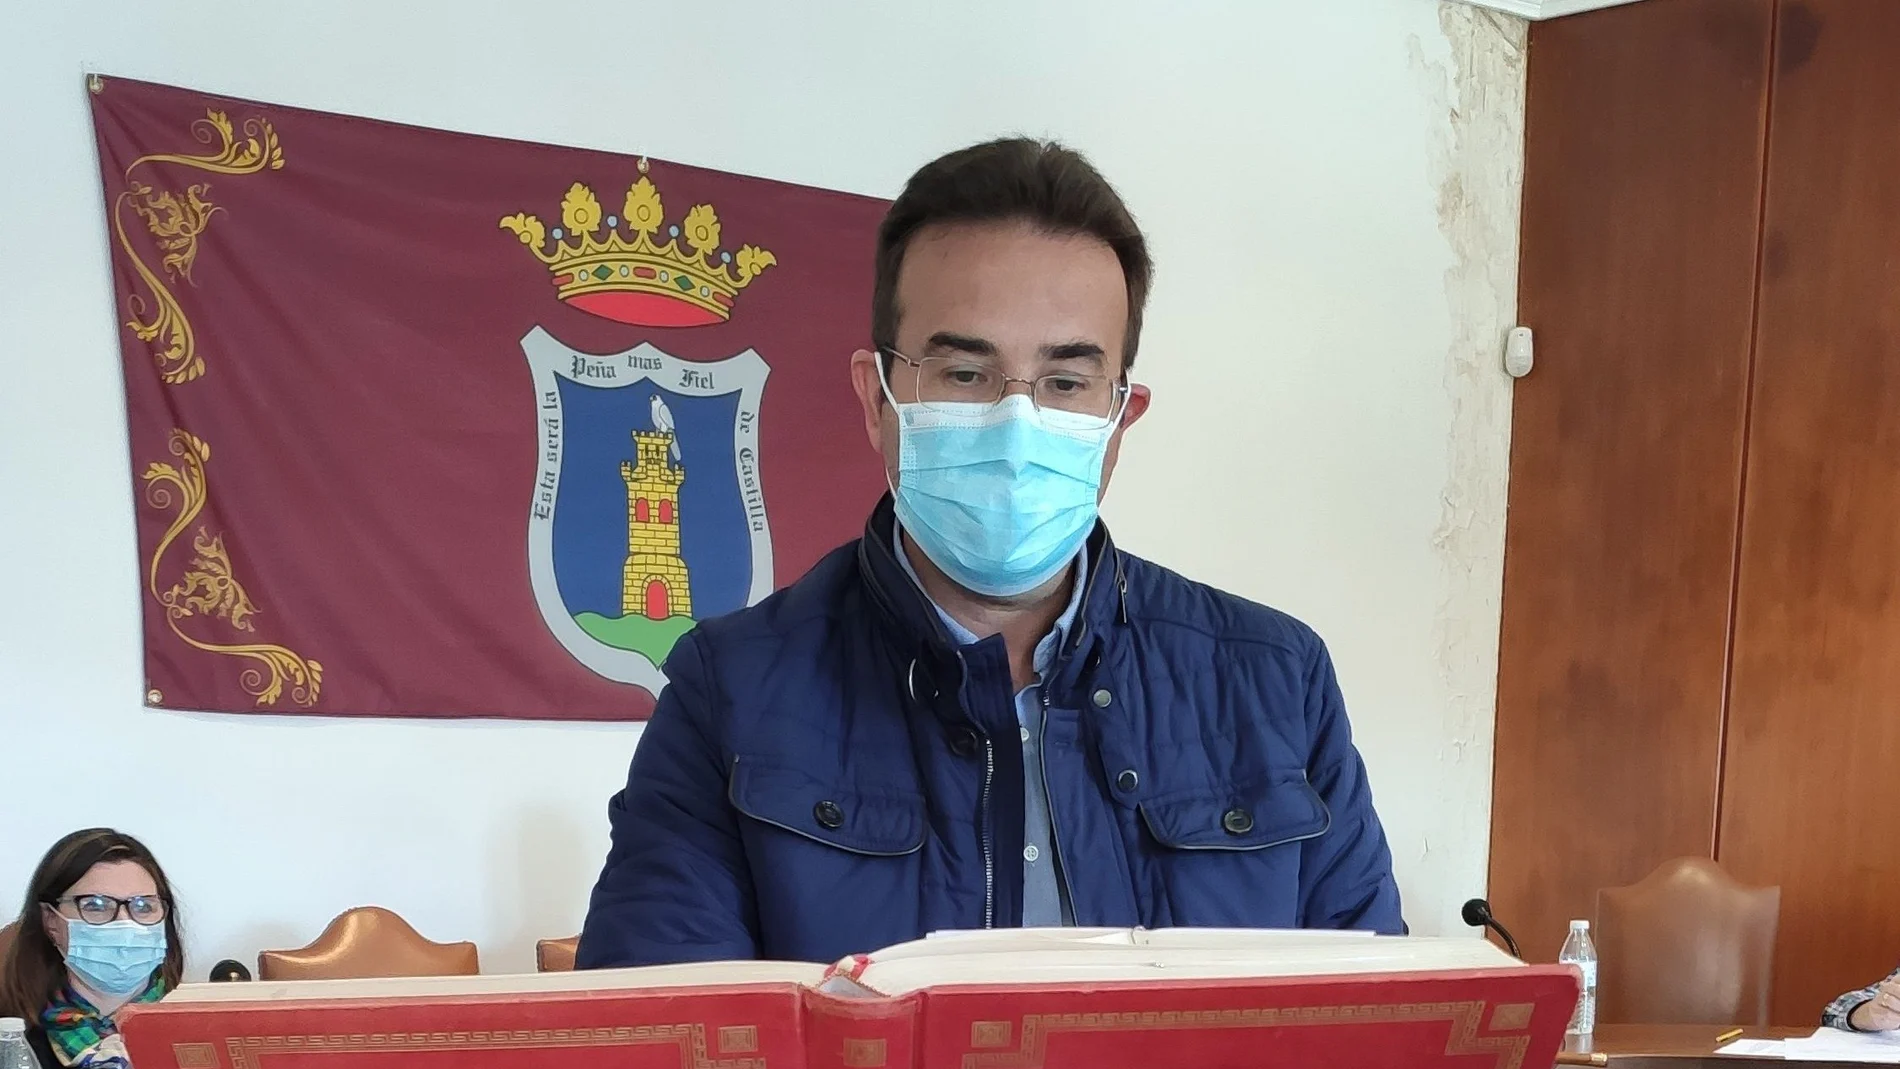 El popular Roberto Díez jura el cargo de alcalde-presidente de Peñafiel